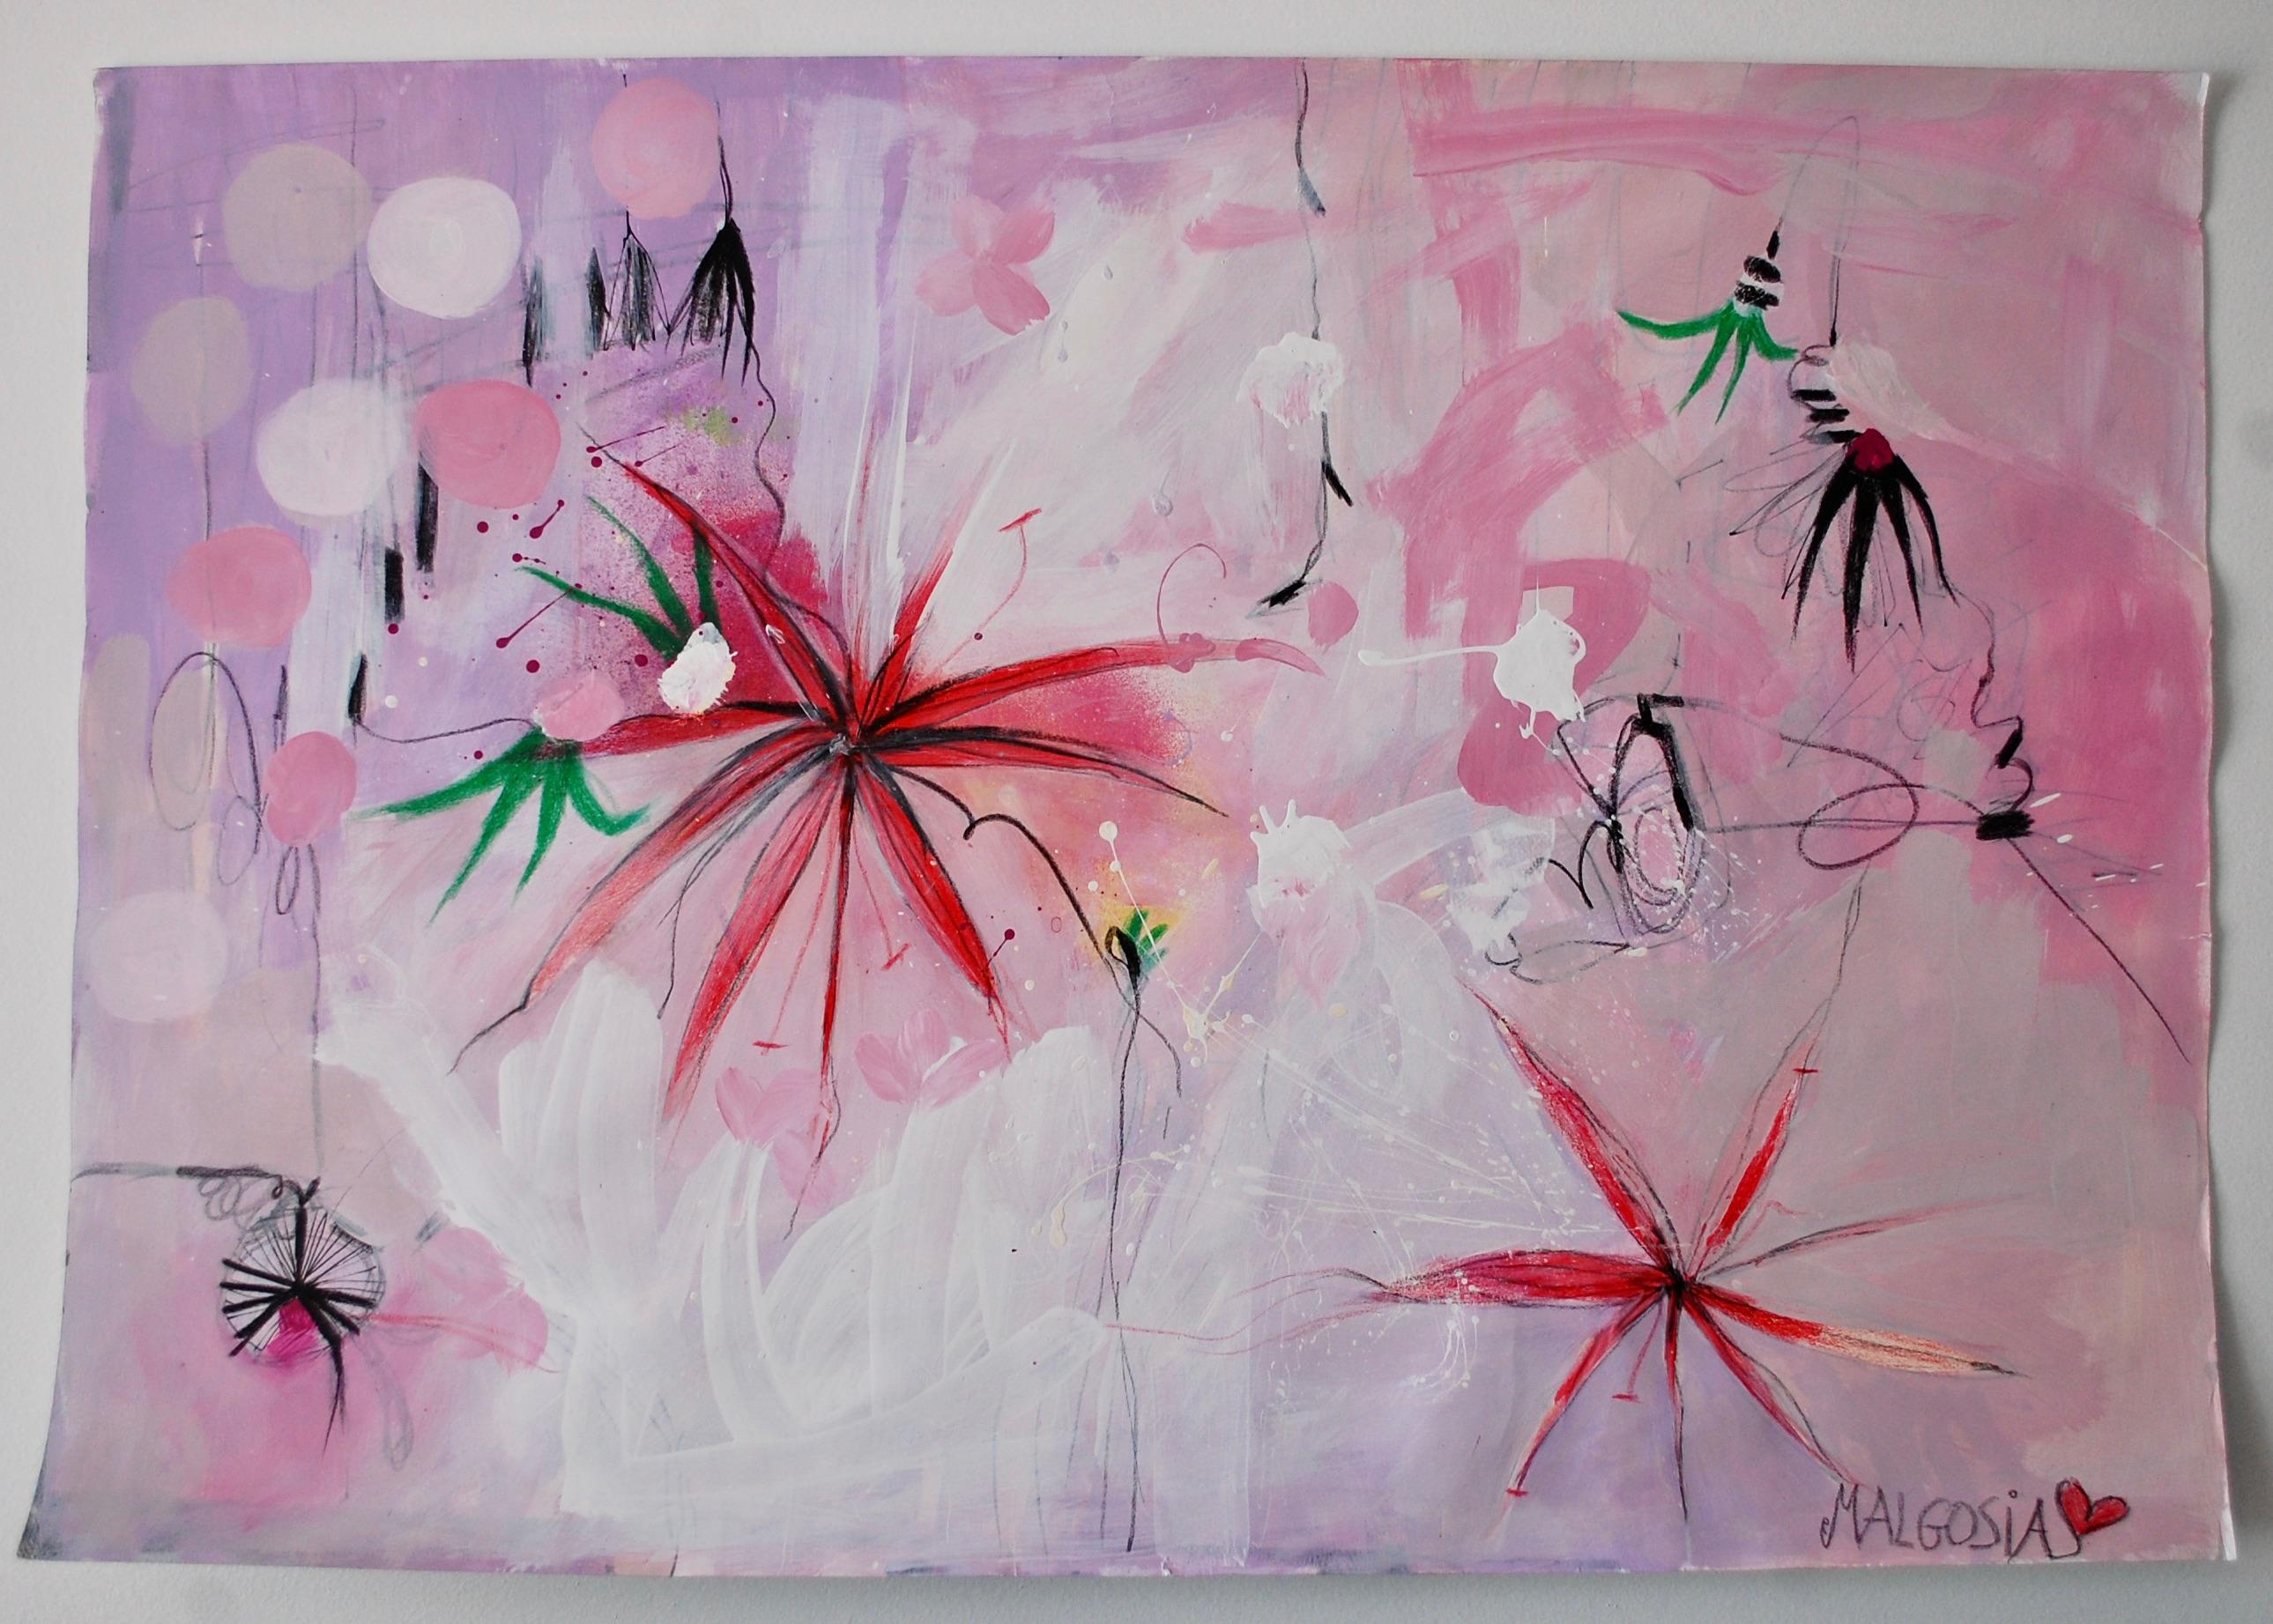 Malgosia Kiernozycka Abstract Painting - Lili Ocean Part II